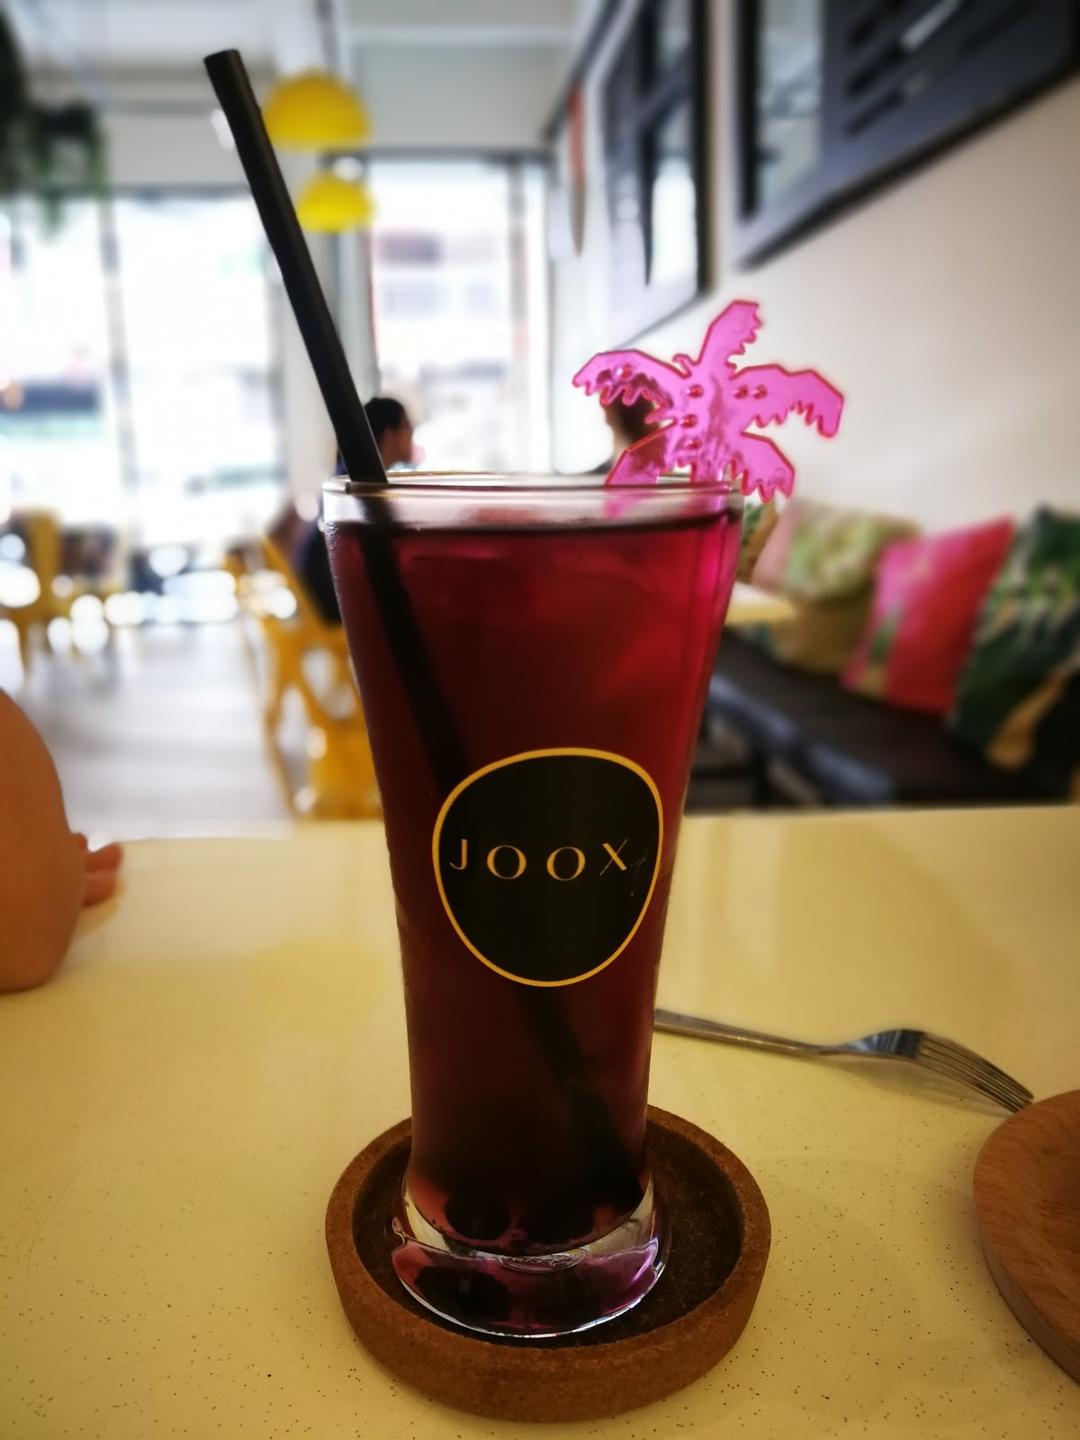 Photo of Joox Cafe - Kota Kinabalu, Sabah, Malaysia